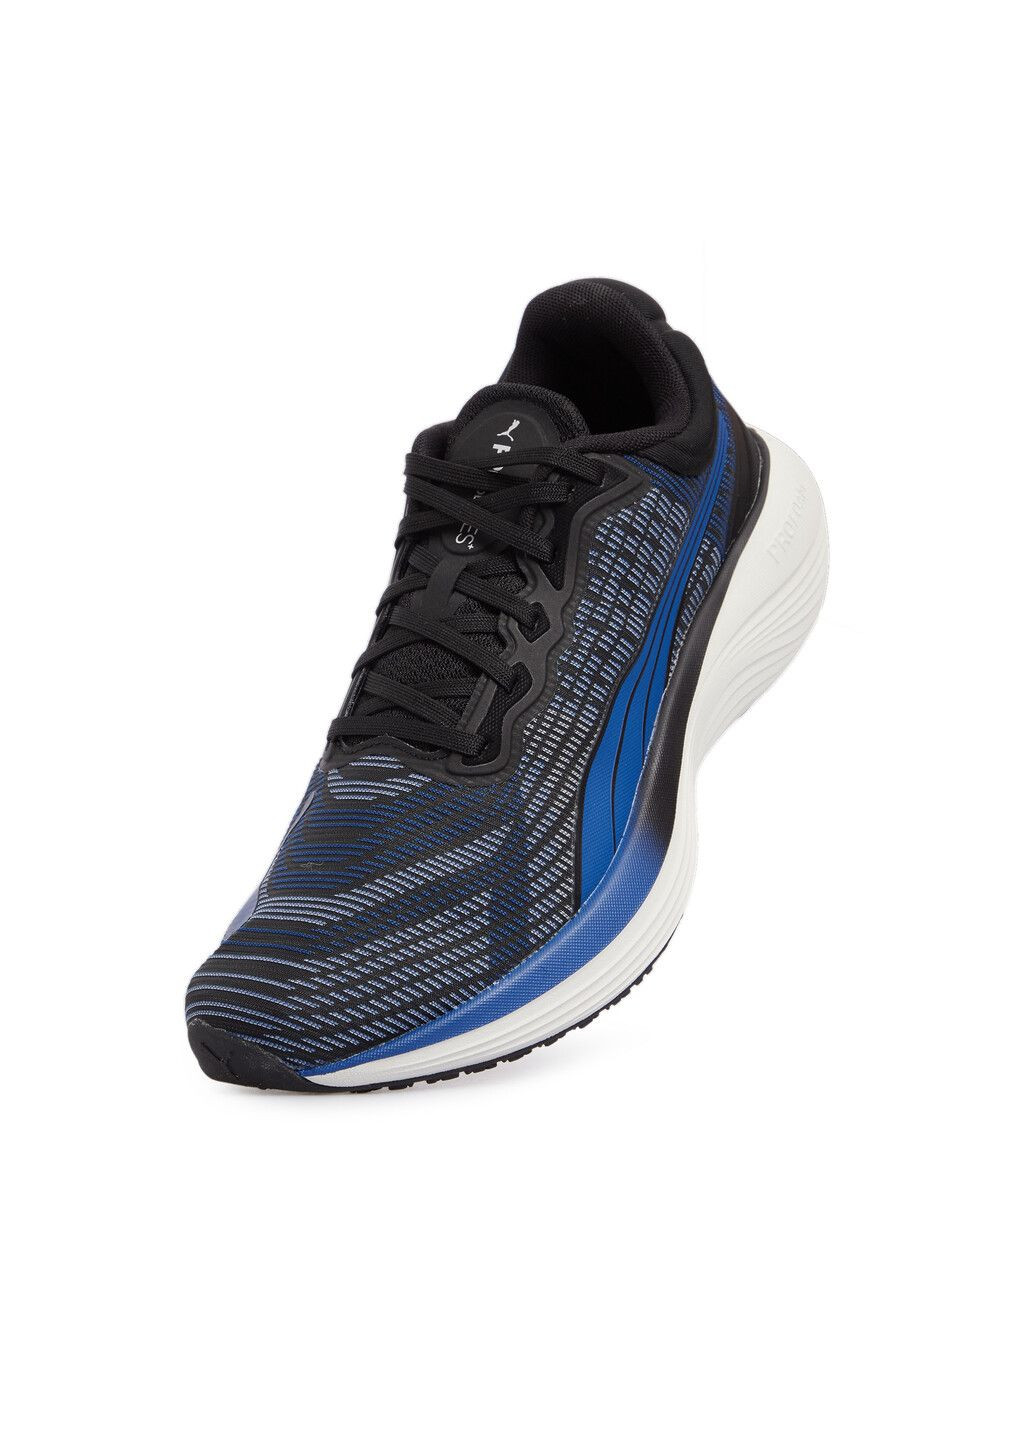 Синие всесезонные кроссовки scend pro ultra running shoe Puma